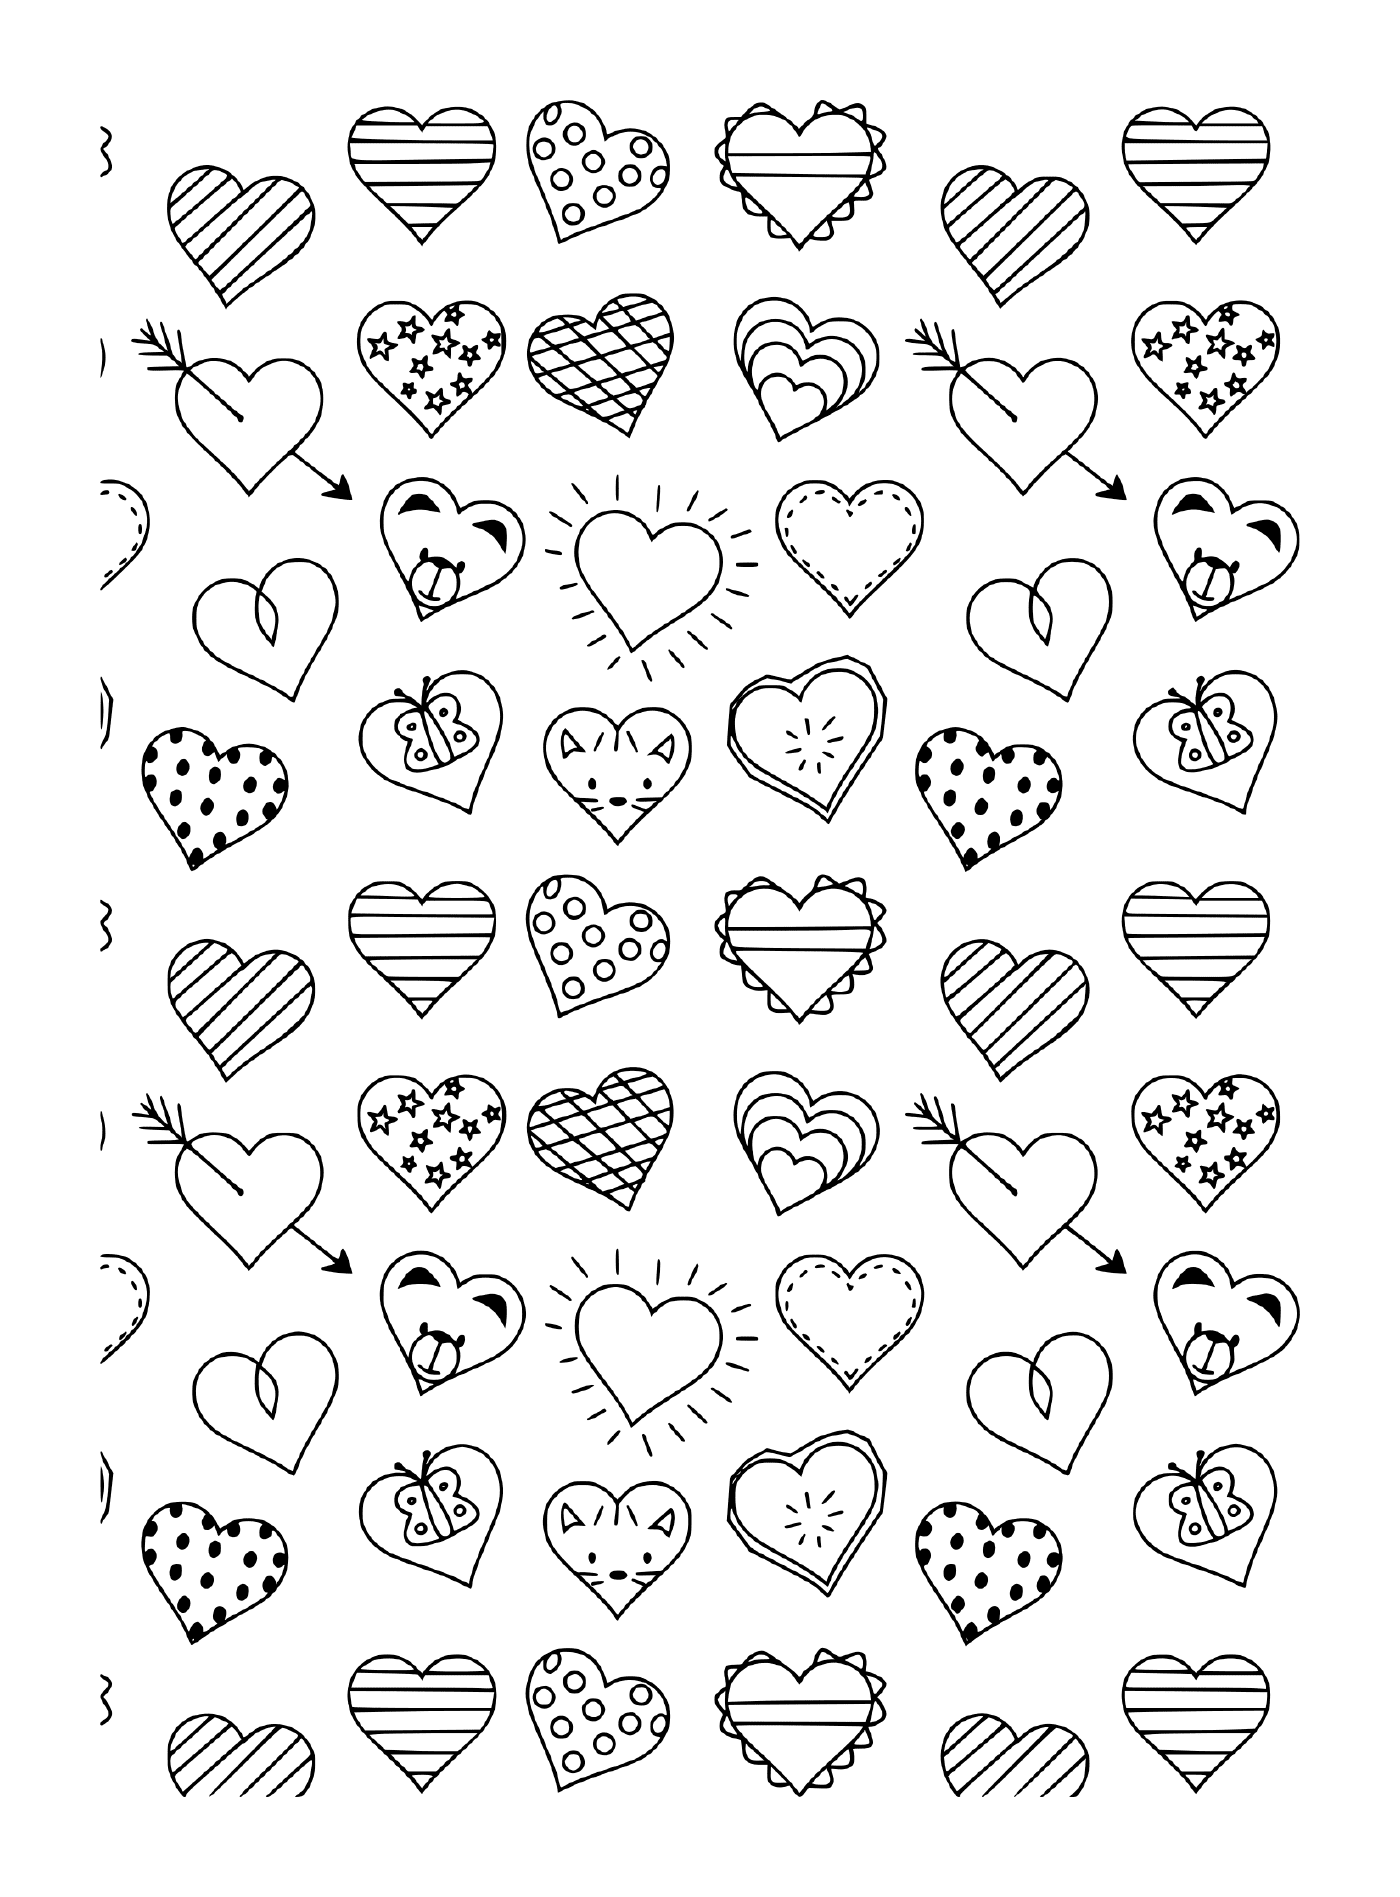  Черно-белый рисунок различных сердец и стрел 